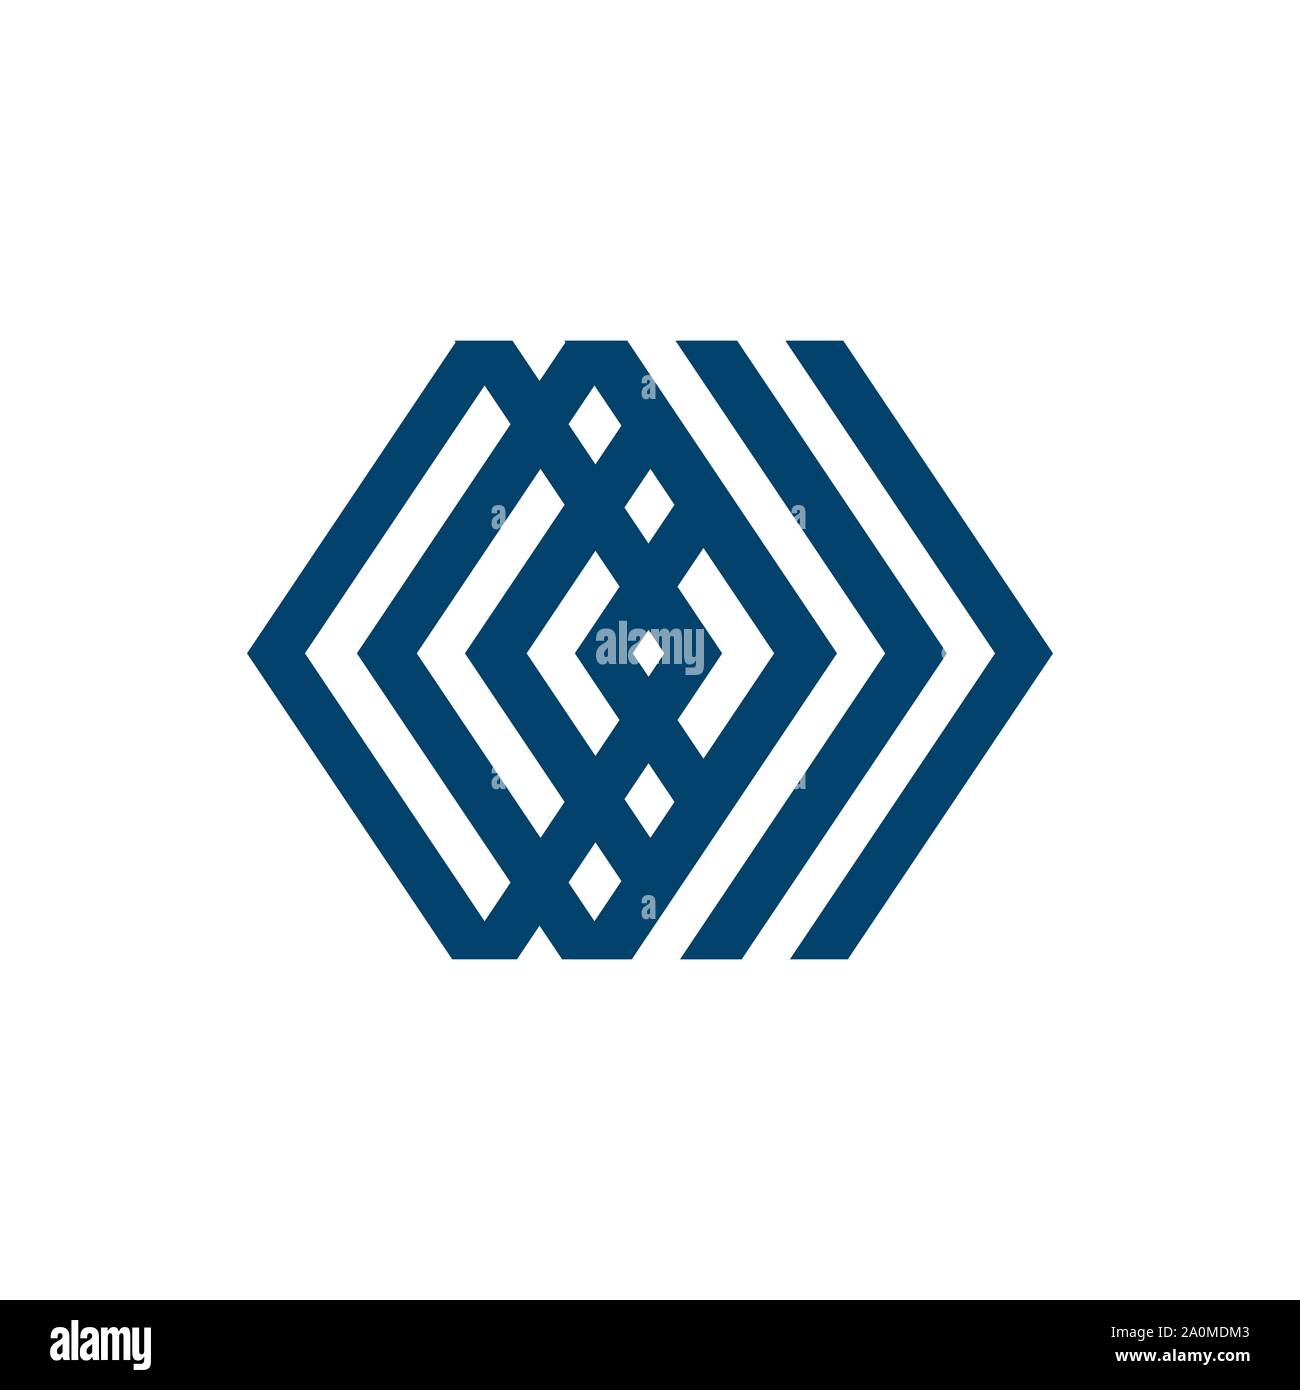 Style moderne design logo hexagonal géométrique de l'élément vecteur icône Illustration de Vecteur